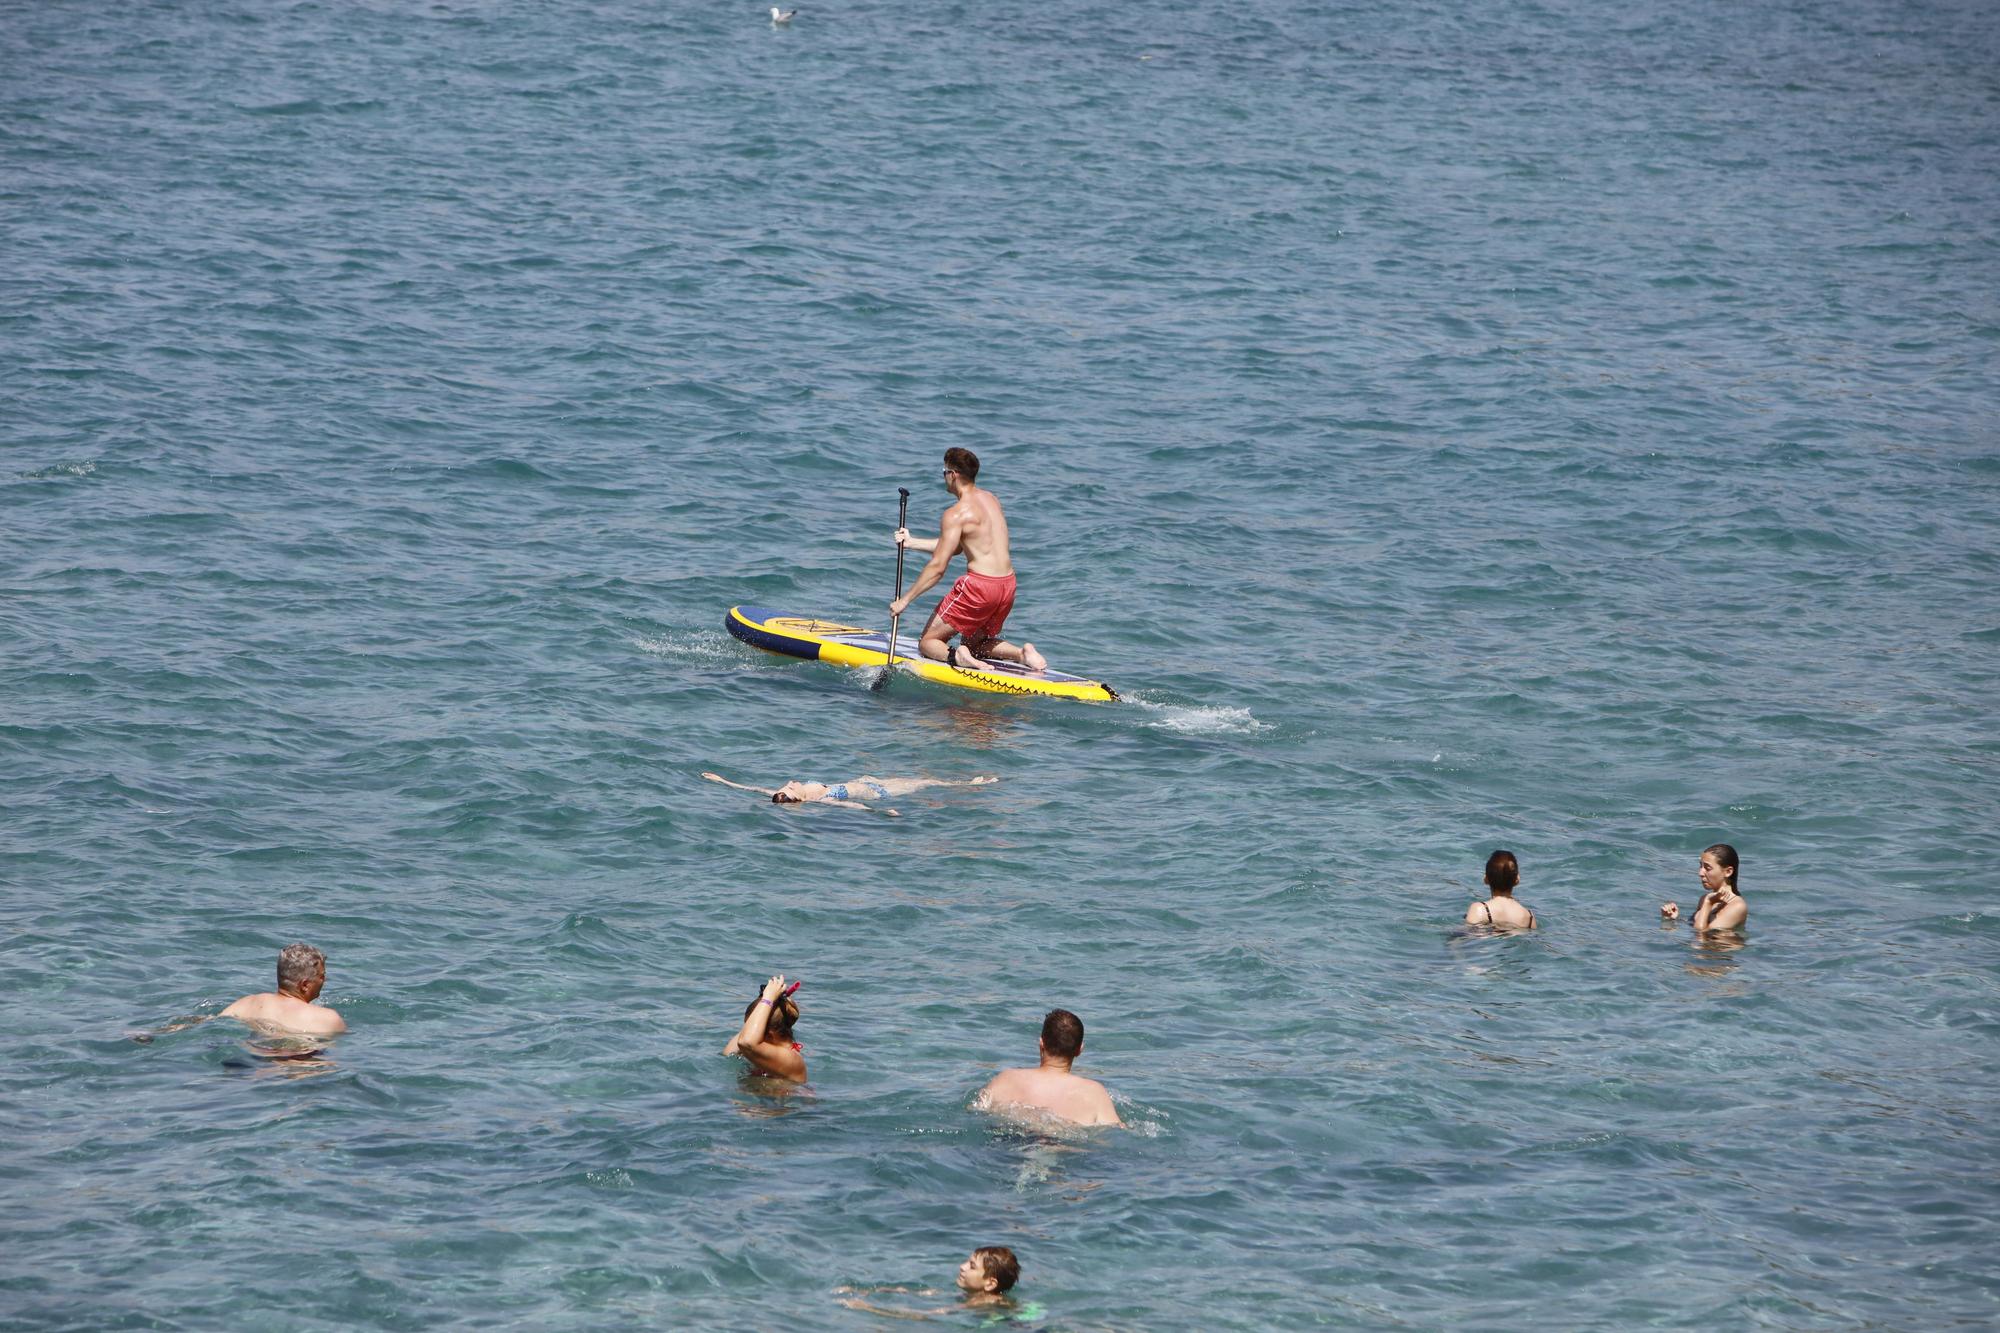 Sommer in Peguera: So genießen die Mallorca-Urlauber das Leben am beliebten Badestrand